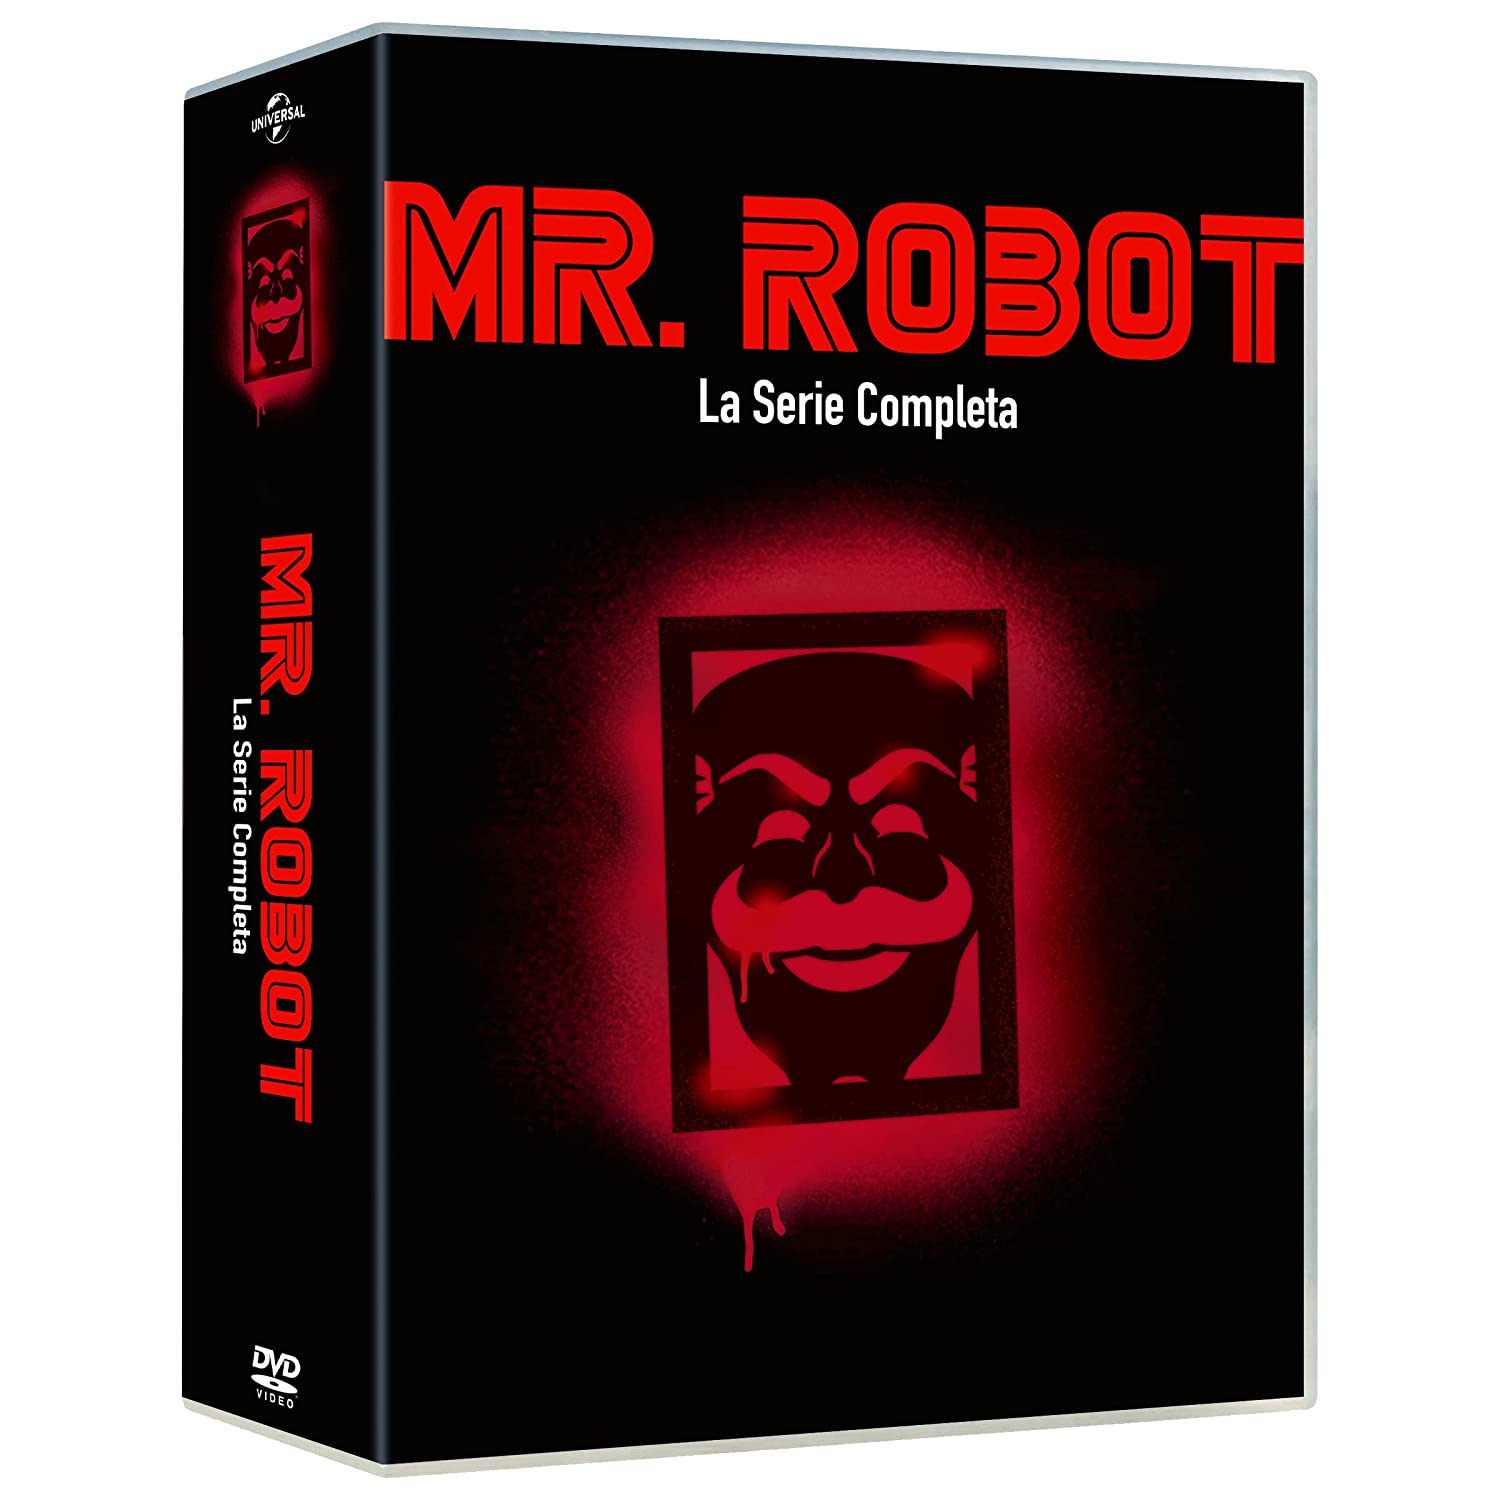 Dvd Mr. Robot - La Serie Completa (14 Dvd) NUOVO SIGILLATO, EDIZIONE DEL 16/06/2022 SUBITO DISPONIBILE